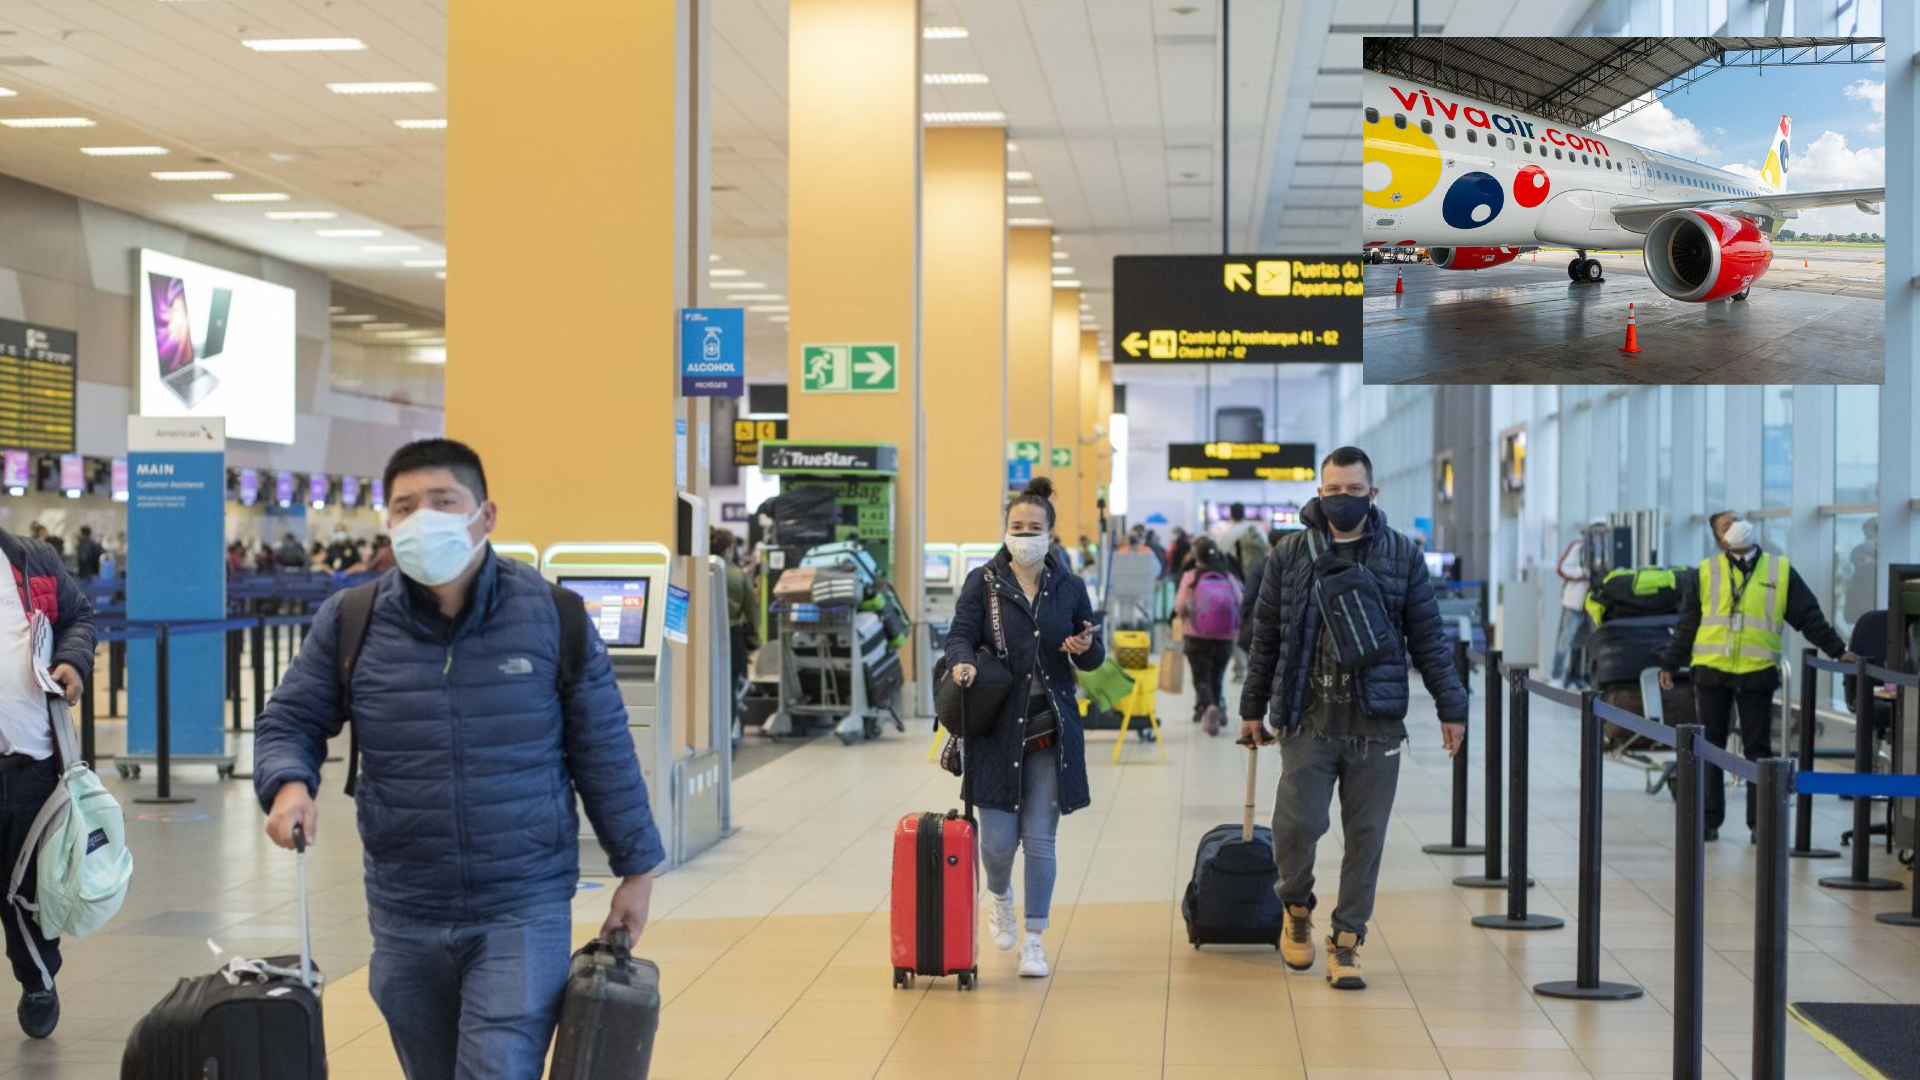 Miles de viajeros nacionales e internacionales se vieron afectados por el cierre de operaciones de Viva Air.